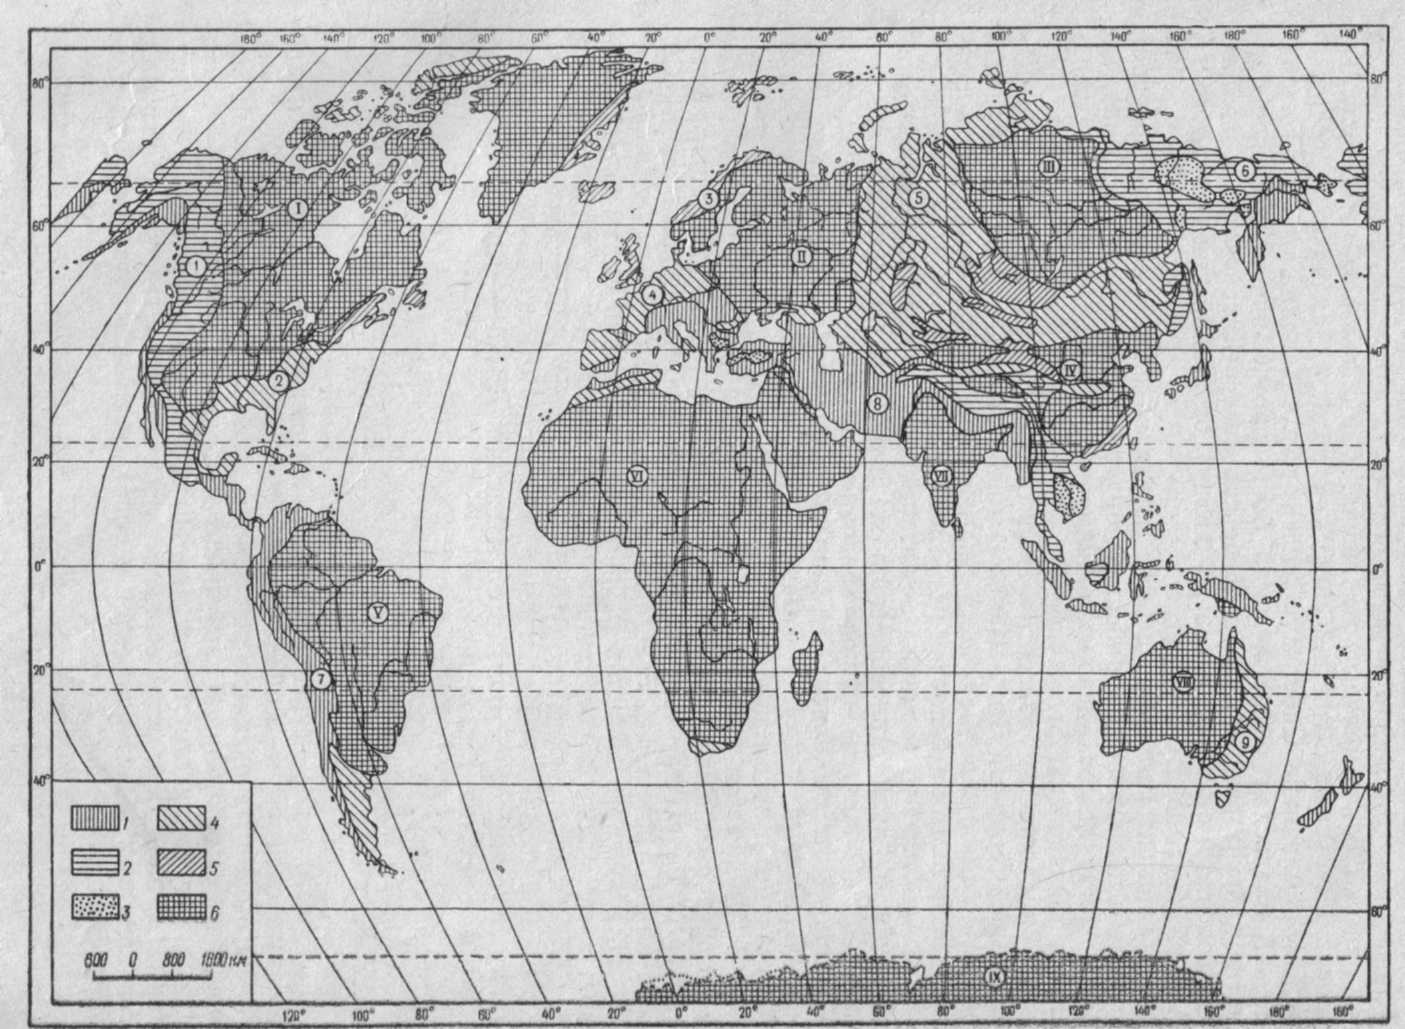 Тектоническая карта мира